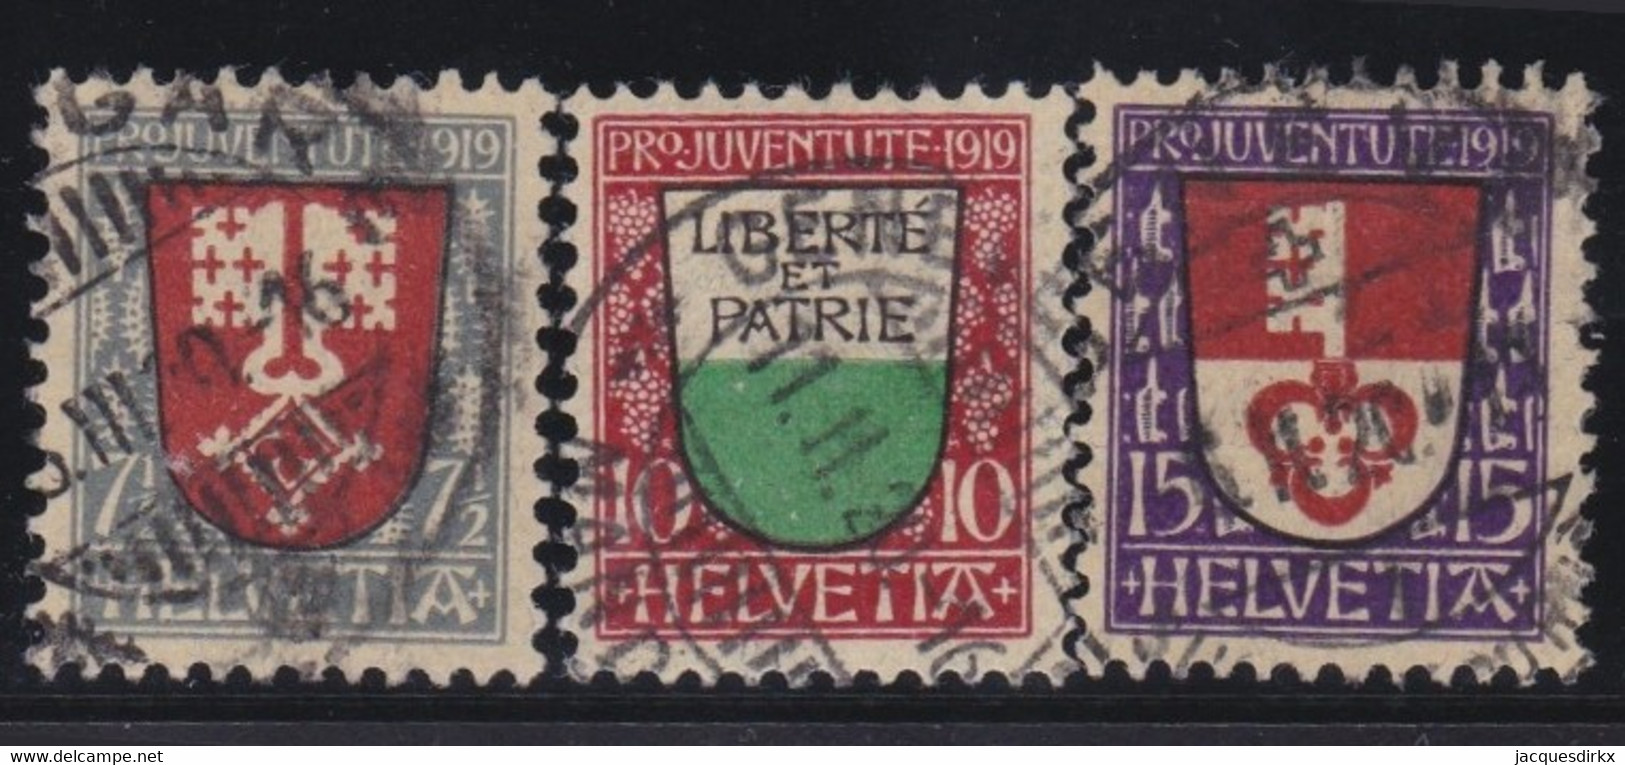 Schweiz    .    Yvert   .   173/175      .       O    .    Gestempelt - Used Stamps